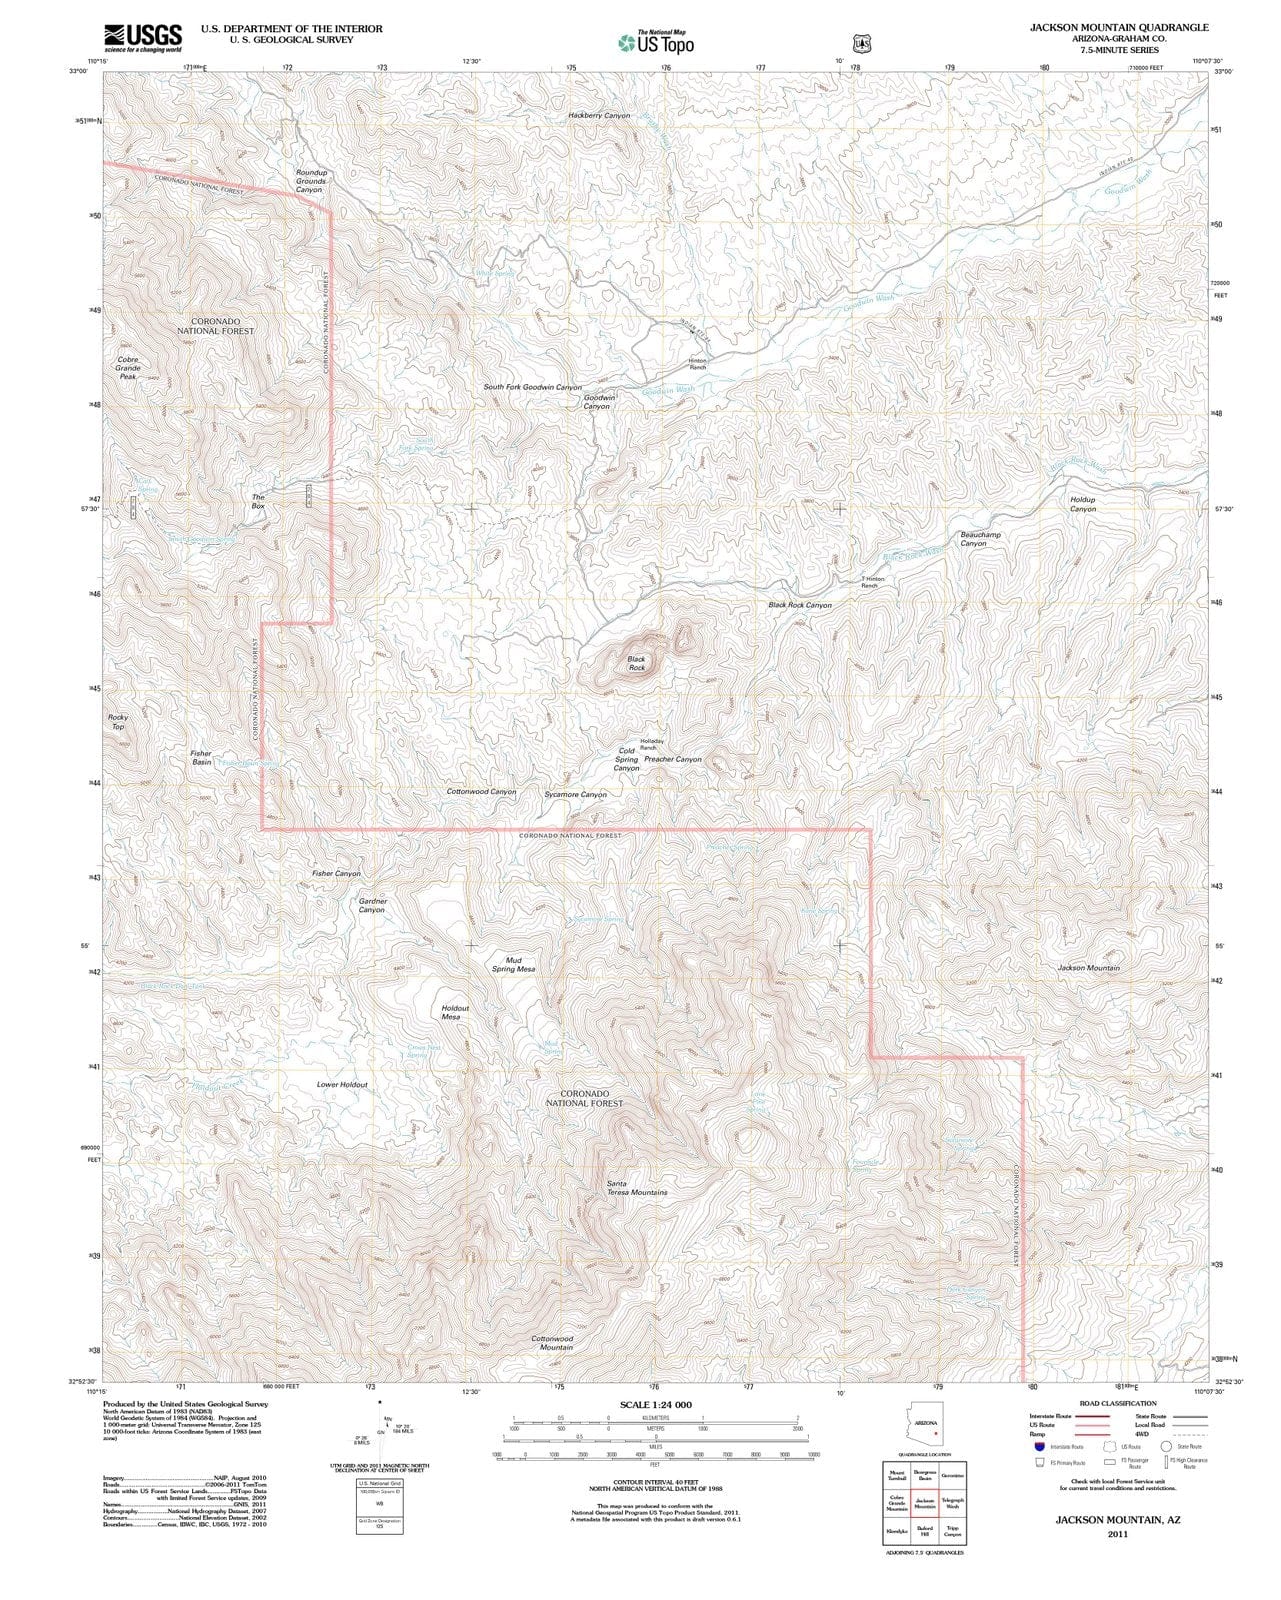 2011 Jackson Mountain, AZ - Arizona - USGS Topographic Map